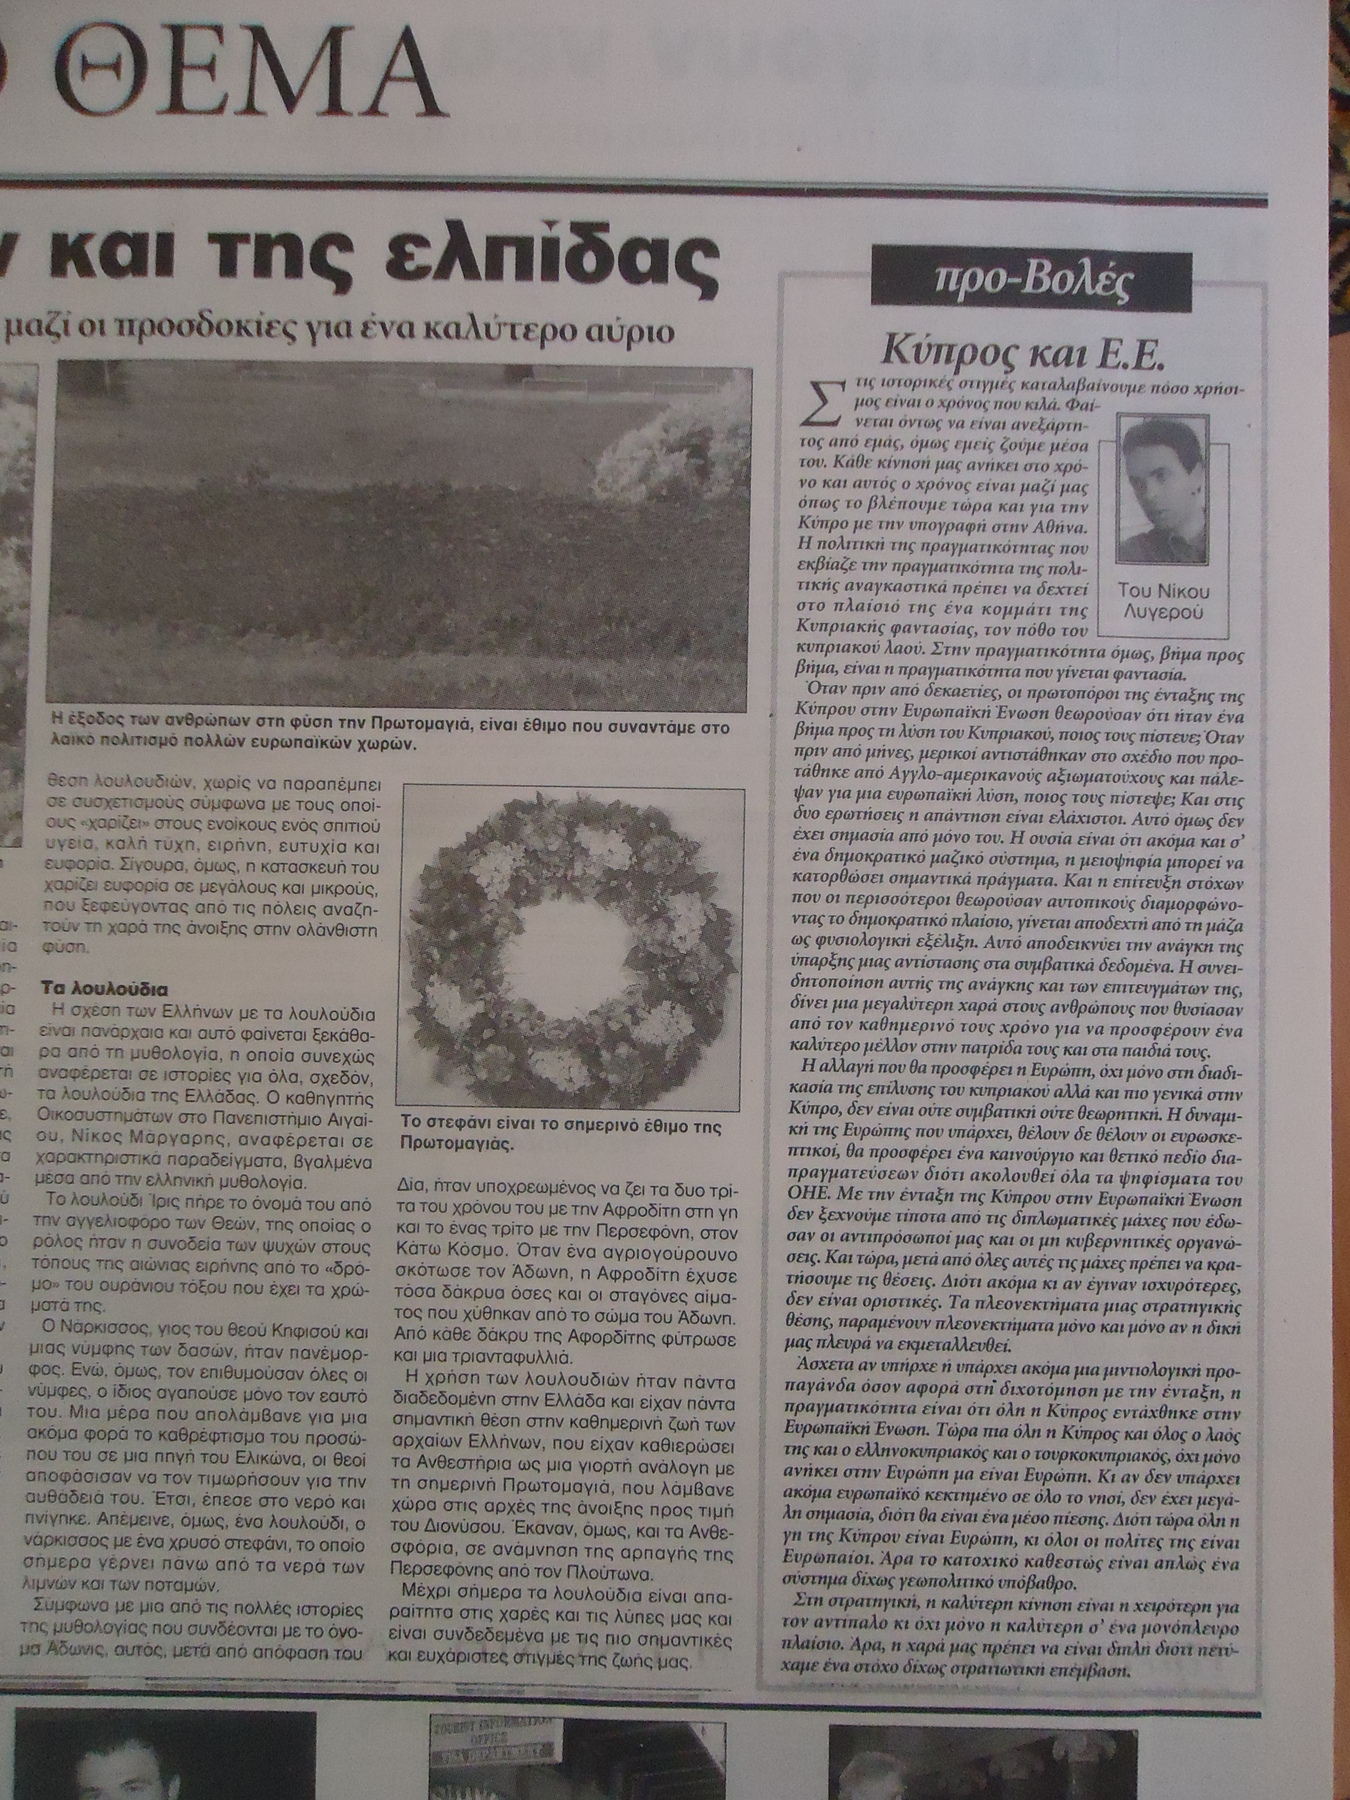 Κύπρος και Ε.Ε. H ΣHMEPINH 01/05/2003.